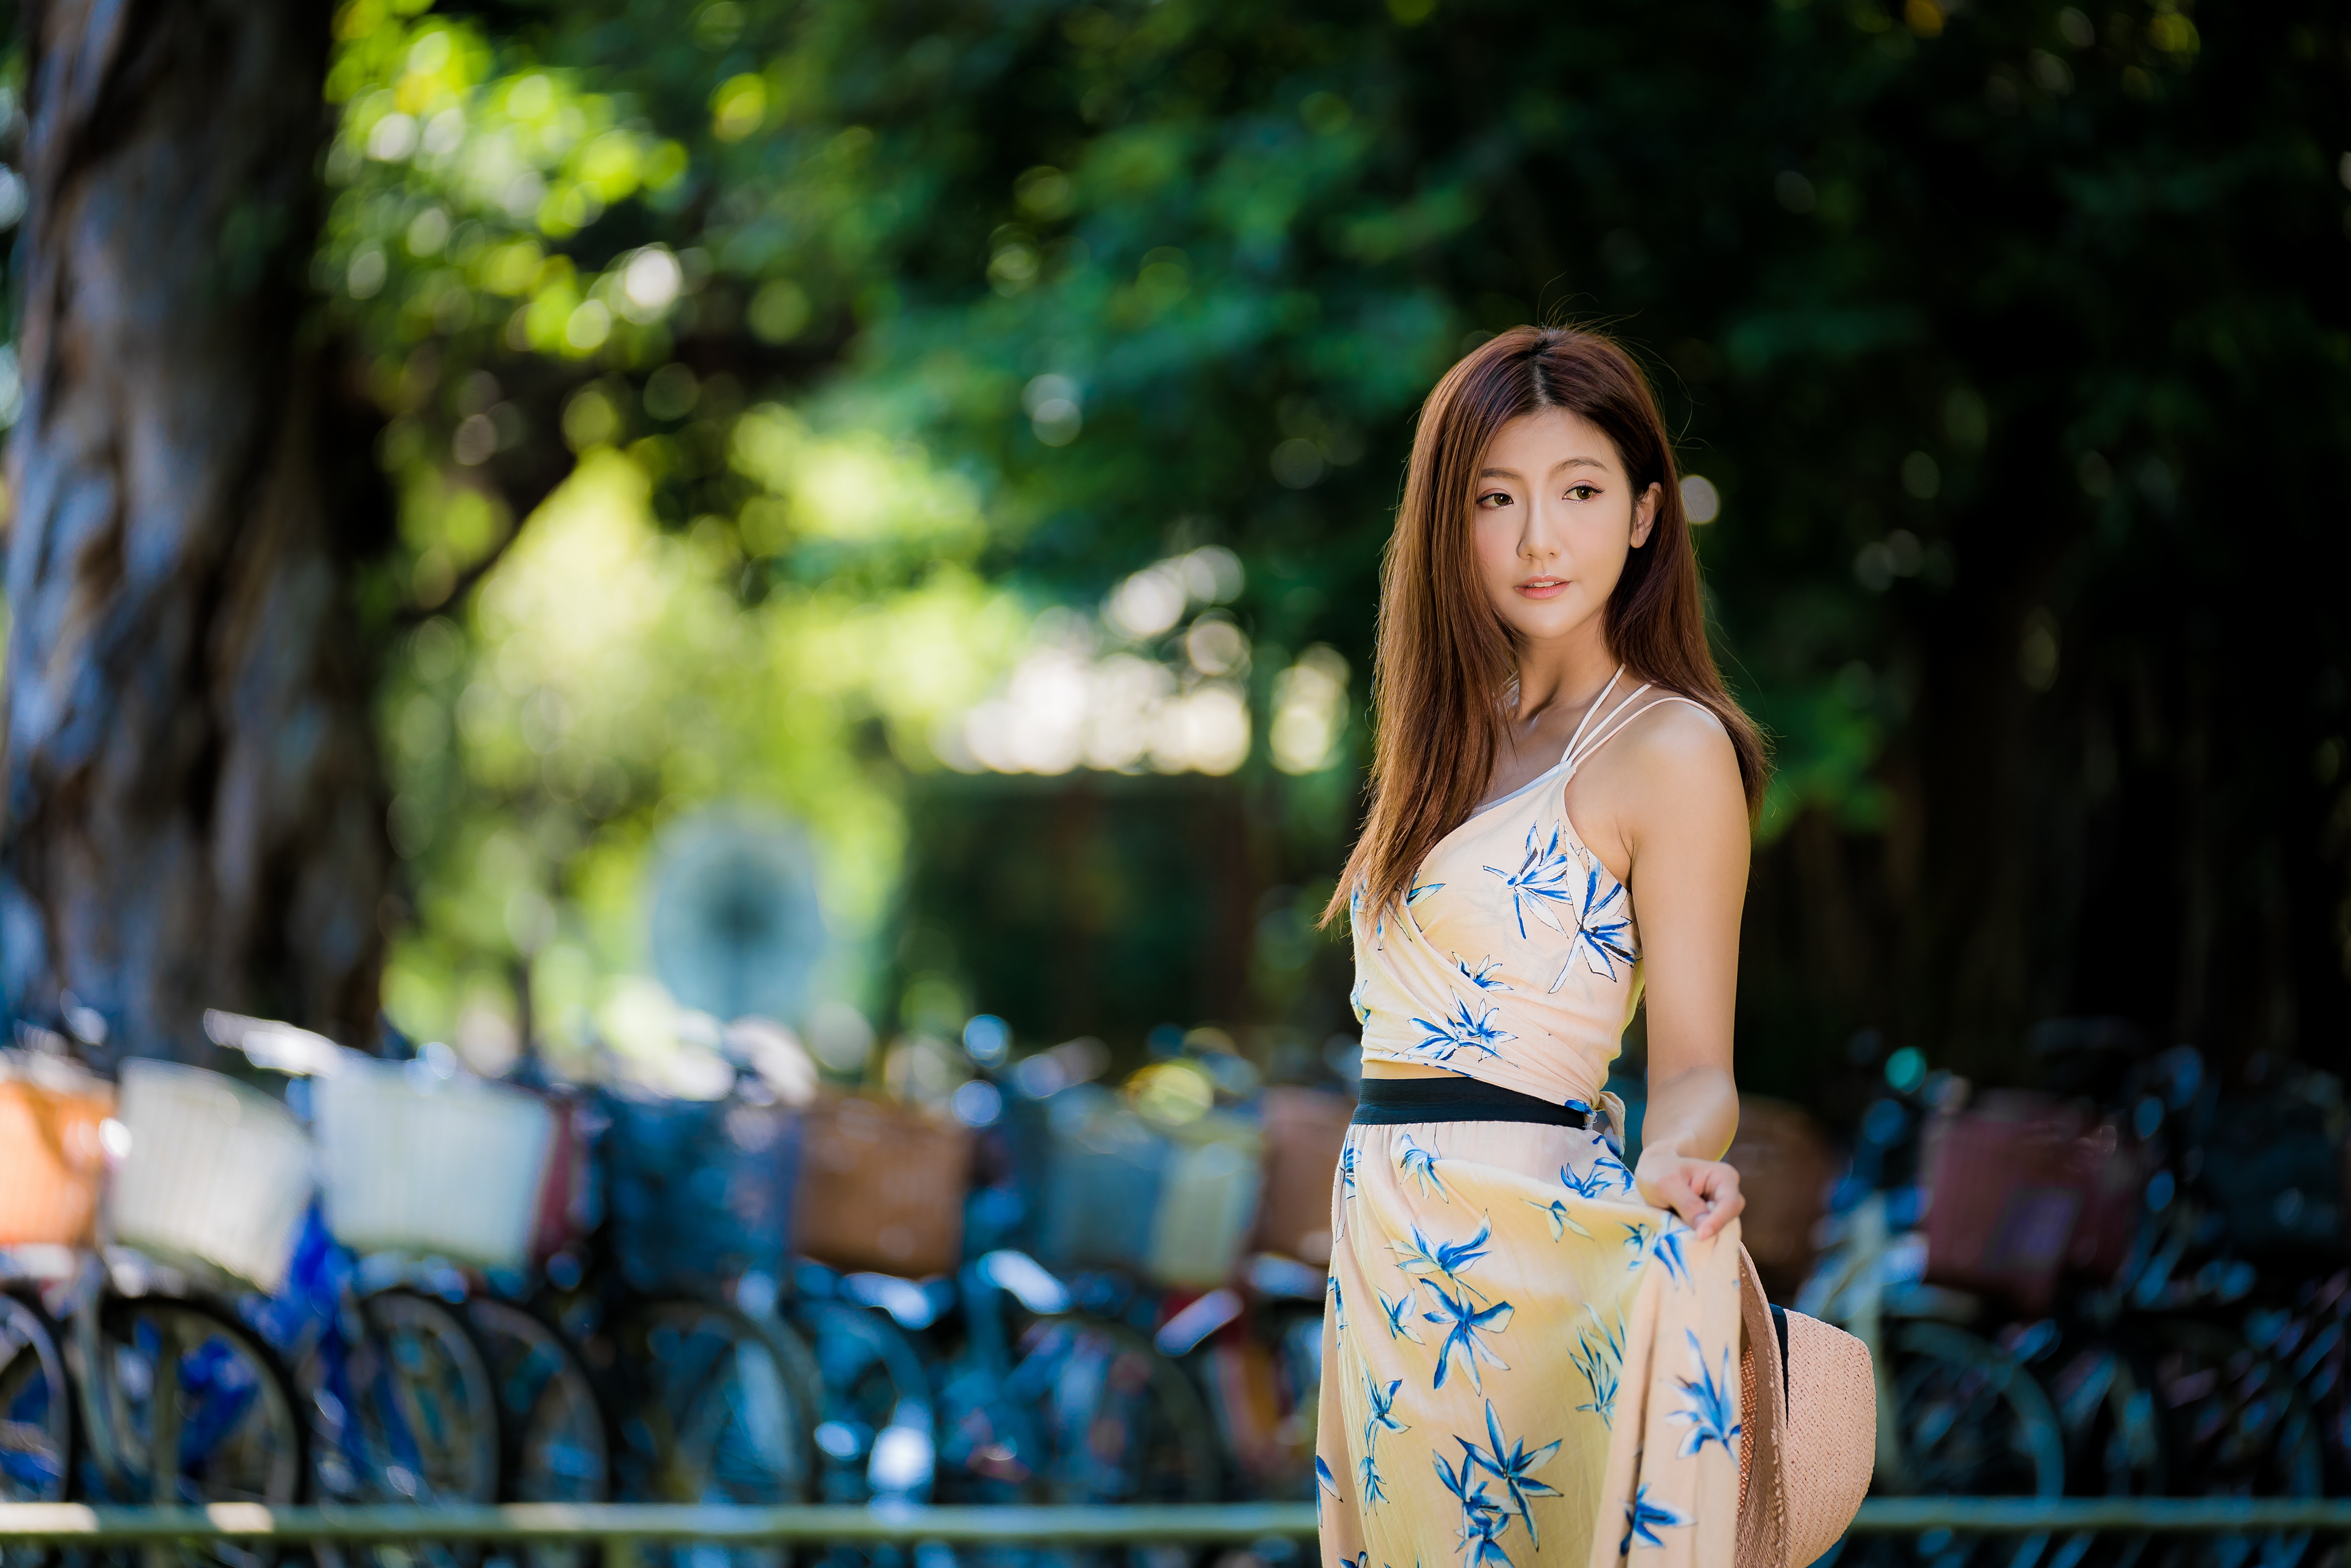 Asian Women Model Flower Dress Brunette Long Hair Bycicle Depth Of Field Trees Straw Hat 4562x3043